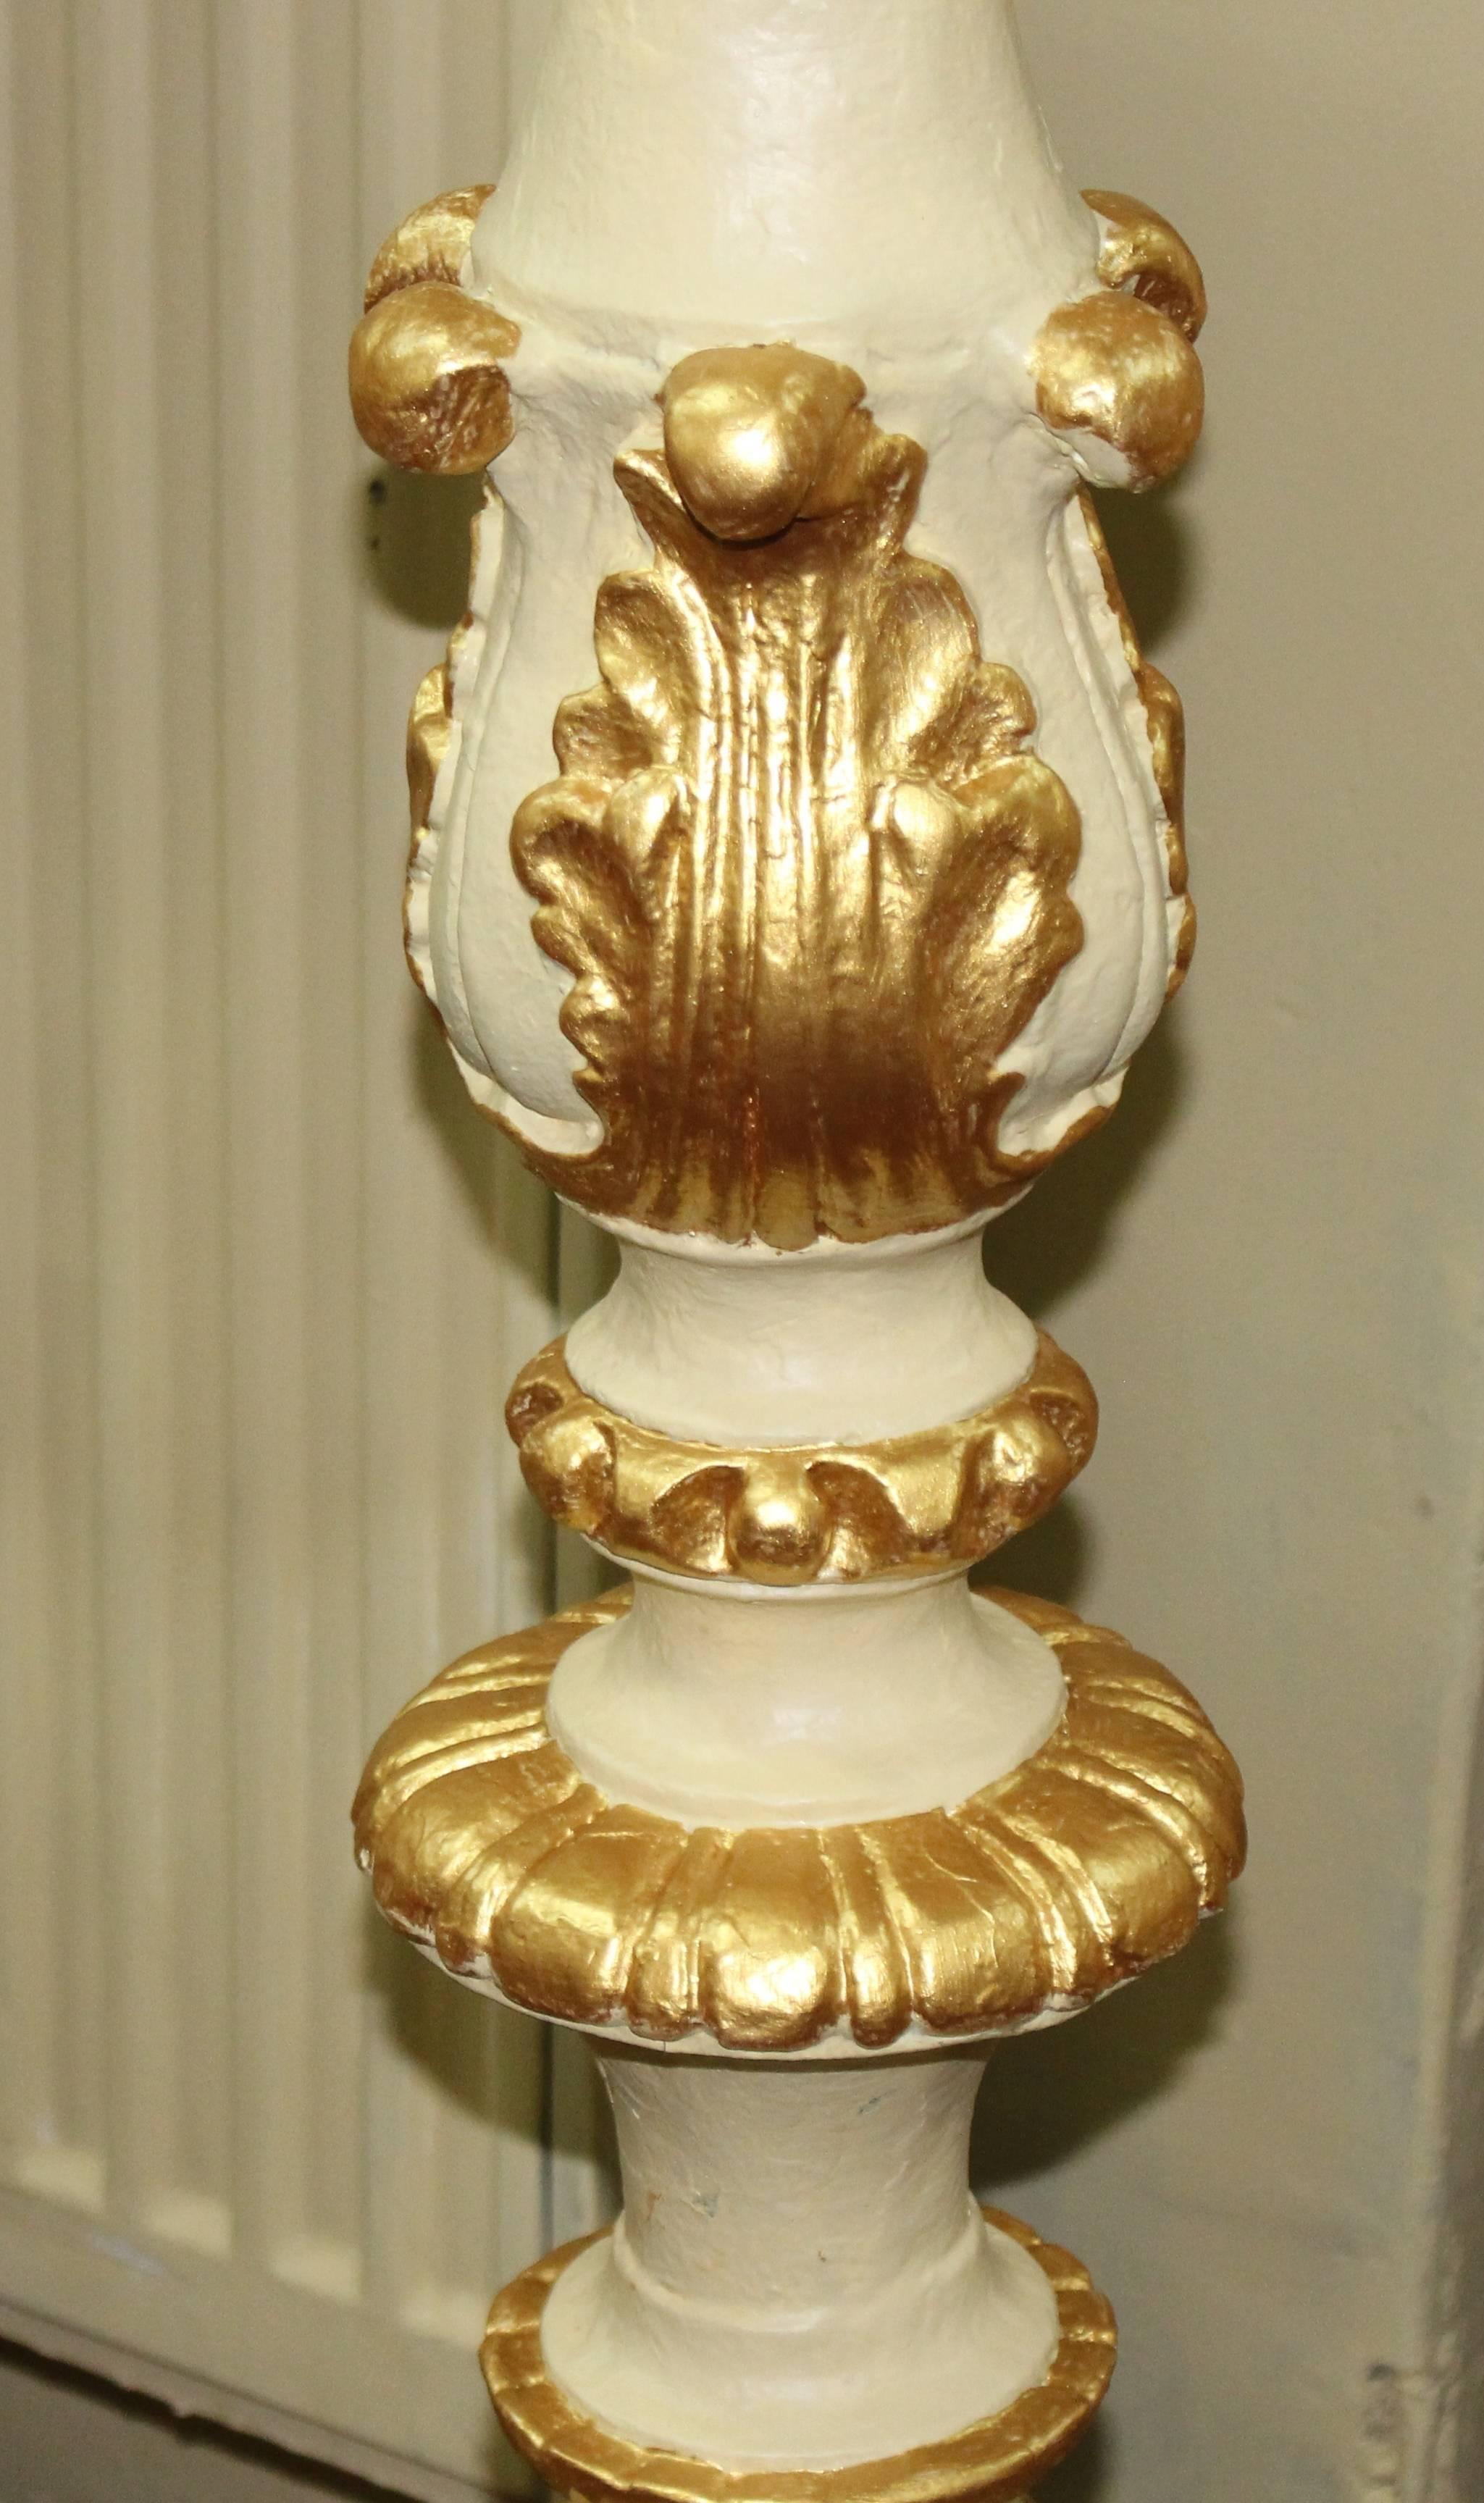 20th Century Pair of Ornate Cream & Gilt Decorative Pedestals